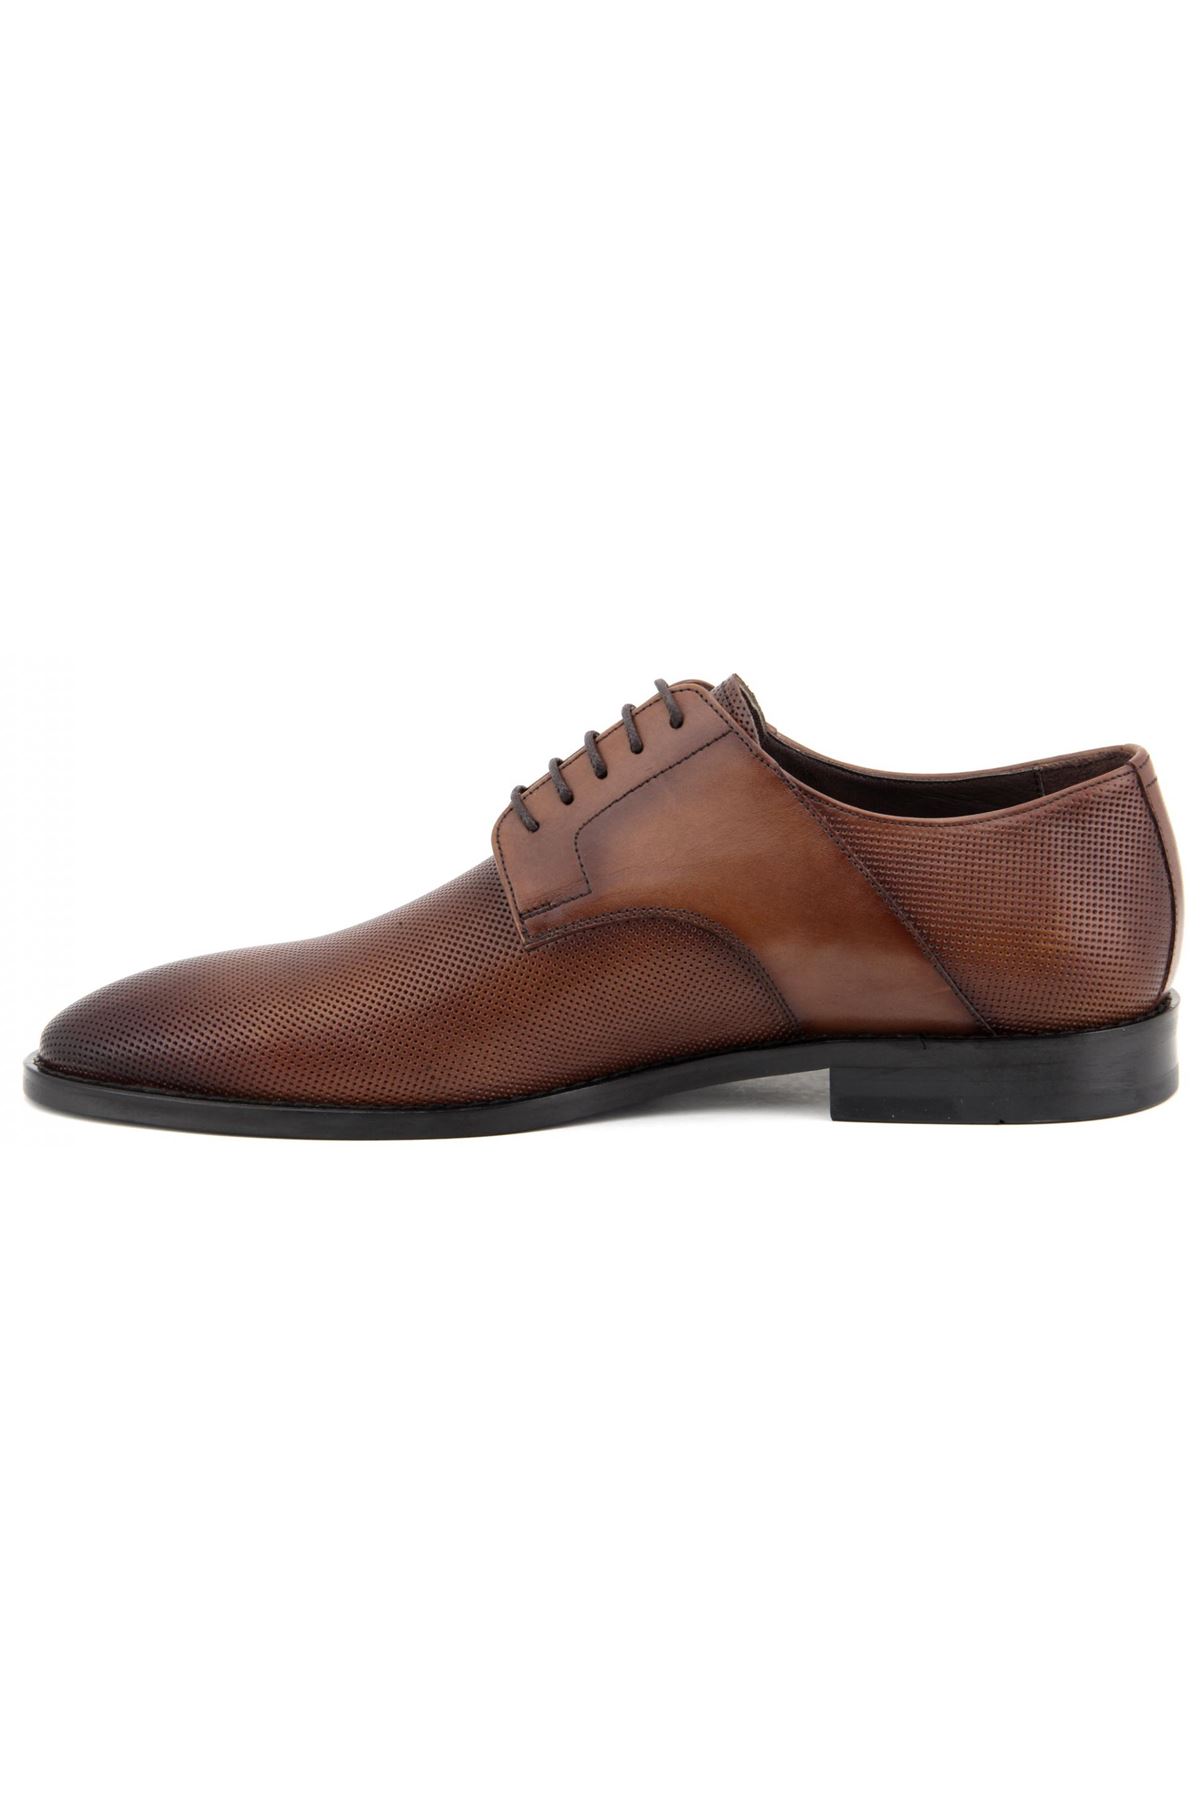 2887 Libero Klasik Erkek Ayakkabı - Taba